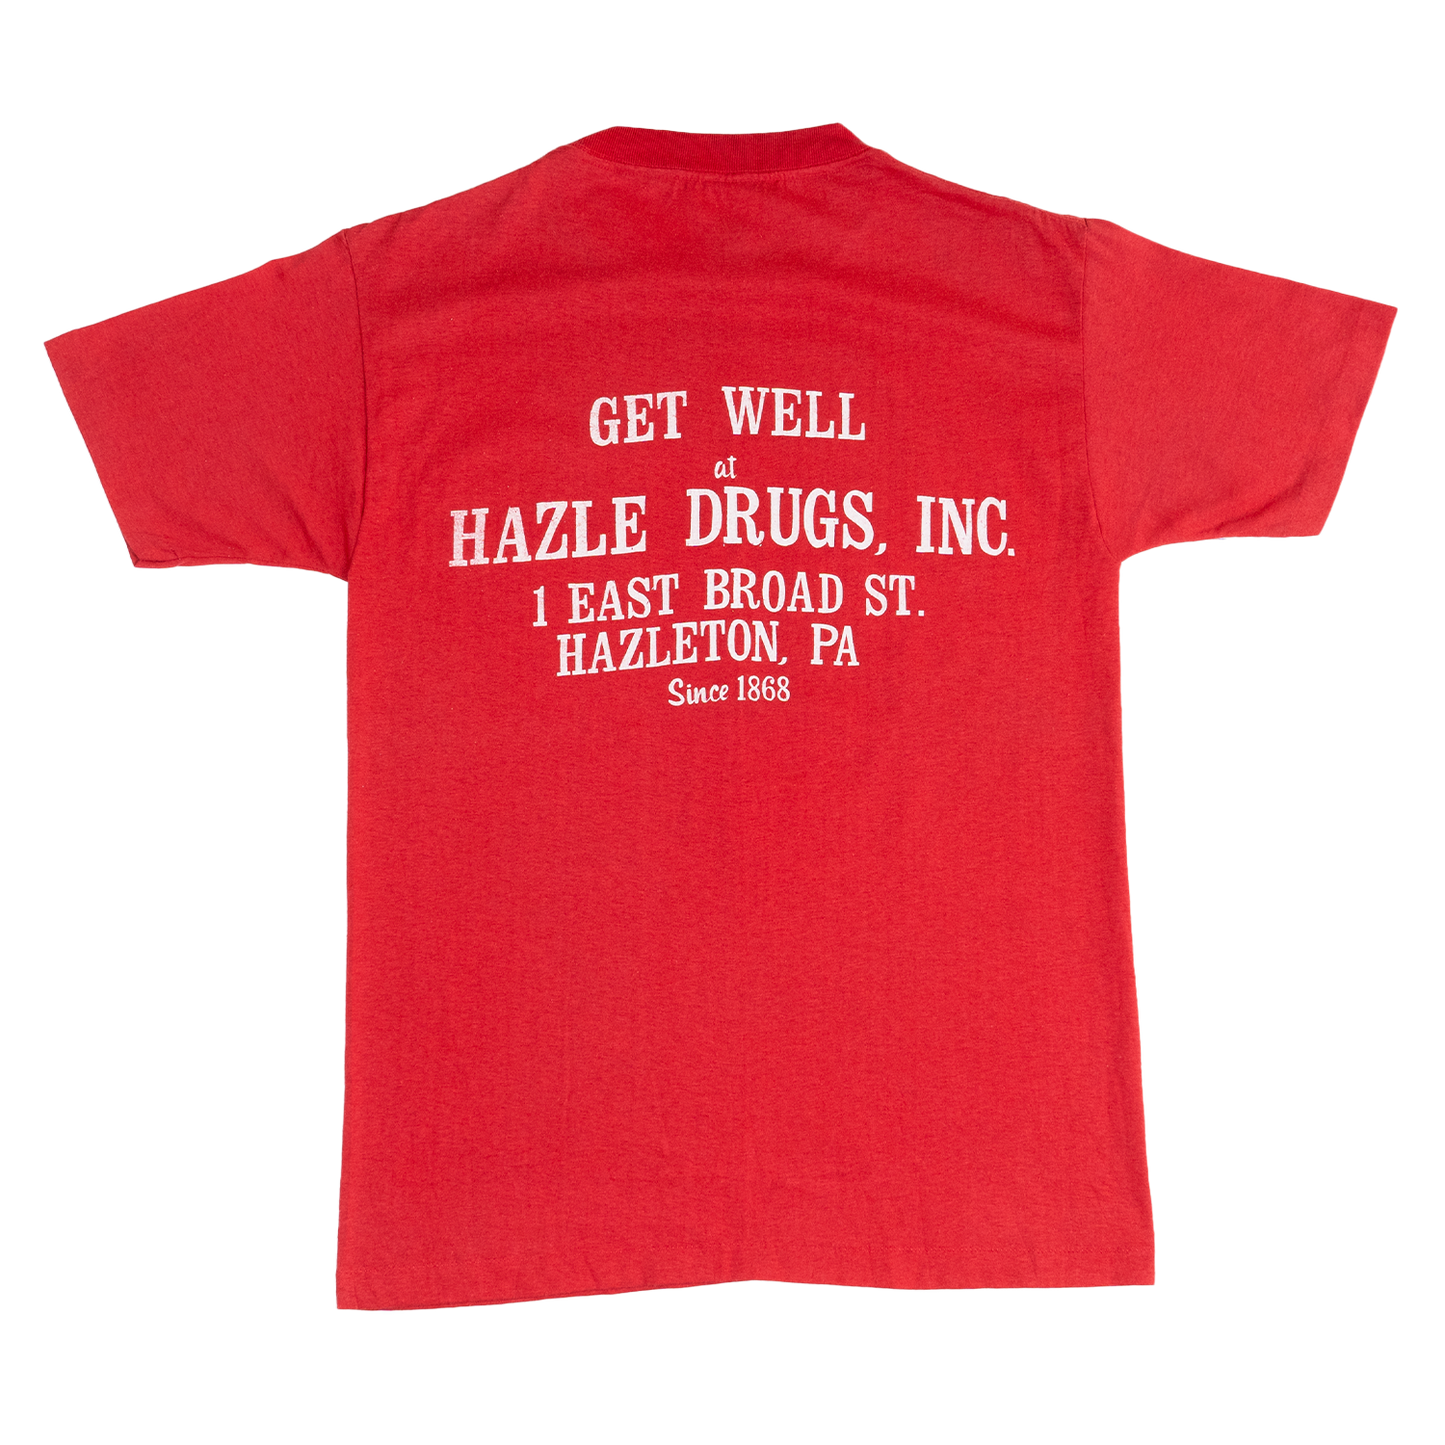 Single Stitch Hazle Drugs, INC. Tee - 70s